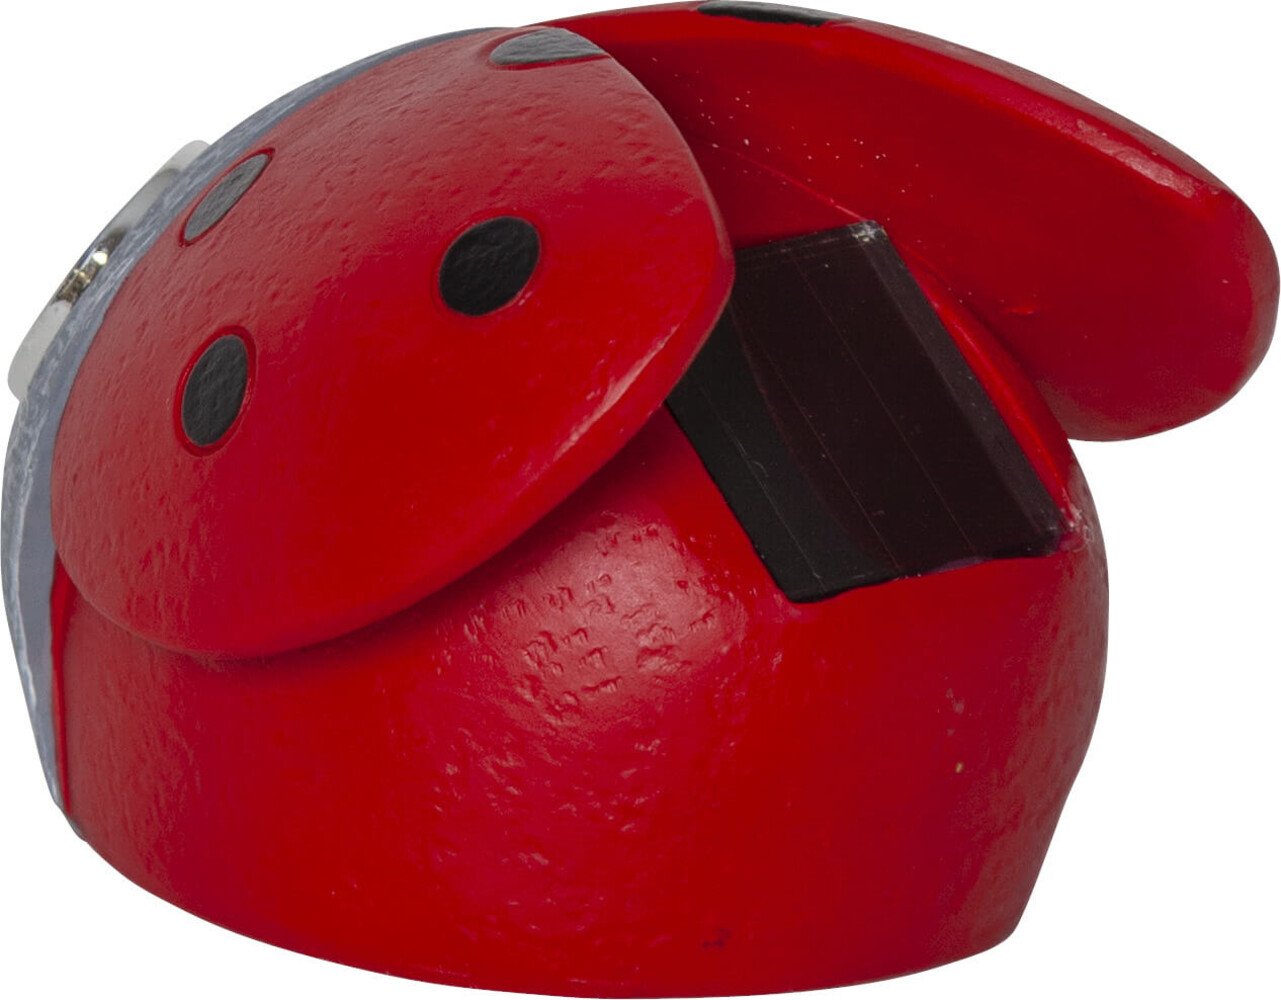 Attraktive, rot-graue Leuchtfigur in Form eines Marienkäfers von Star Trading